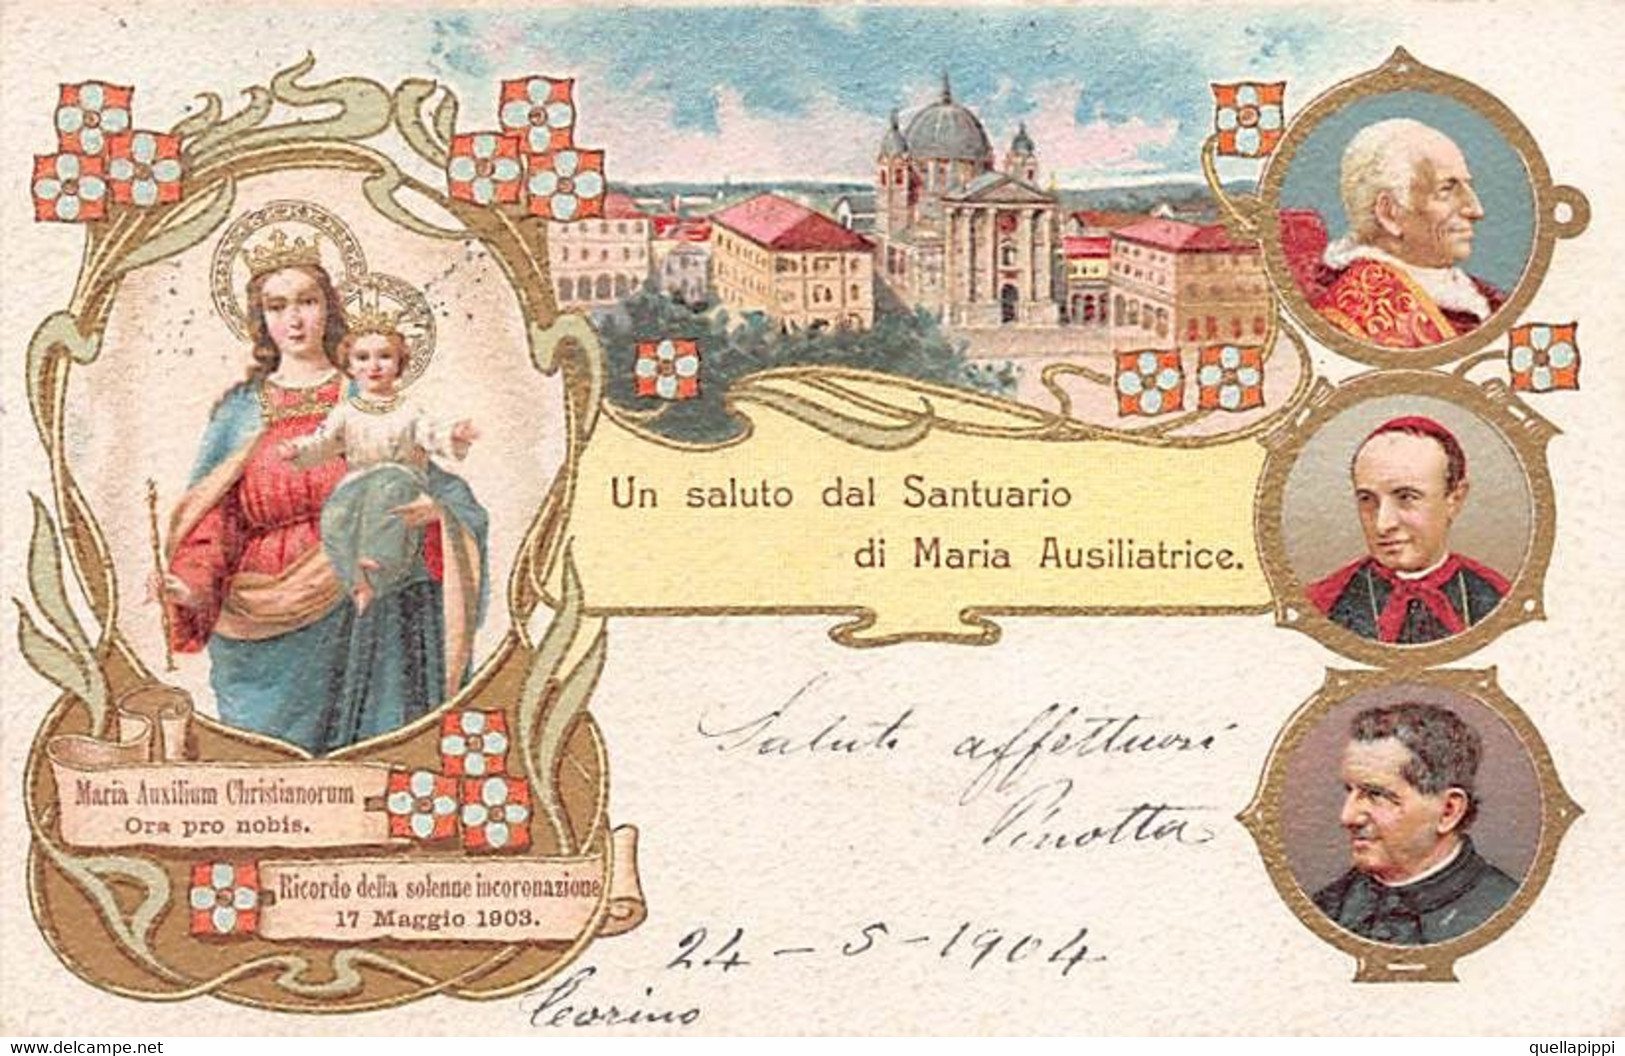 014157 "TORINO - UN SALUTO DAL SANTUARIO DI MARIA AUSILIATRICE" IMMAGINE RELIGIOSA, CART SPED 1904 - Churches